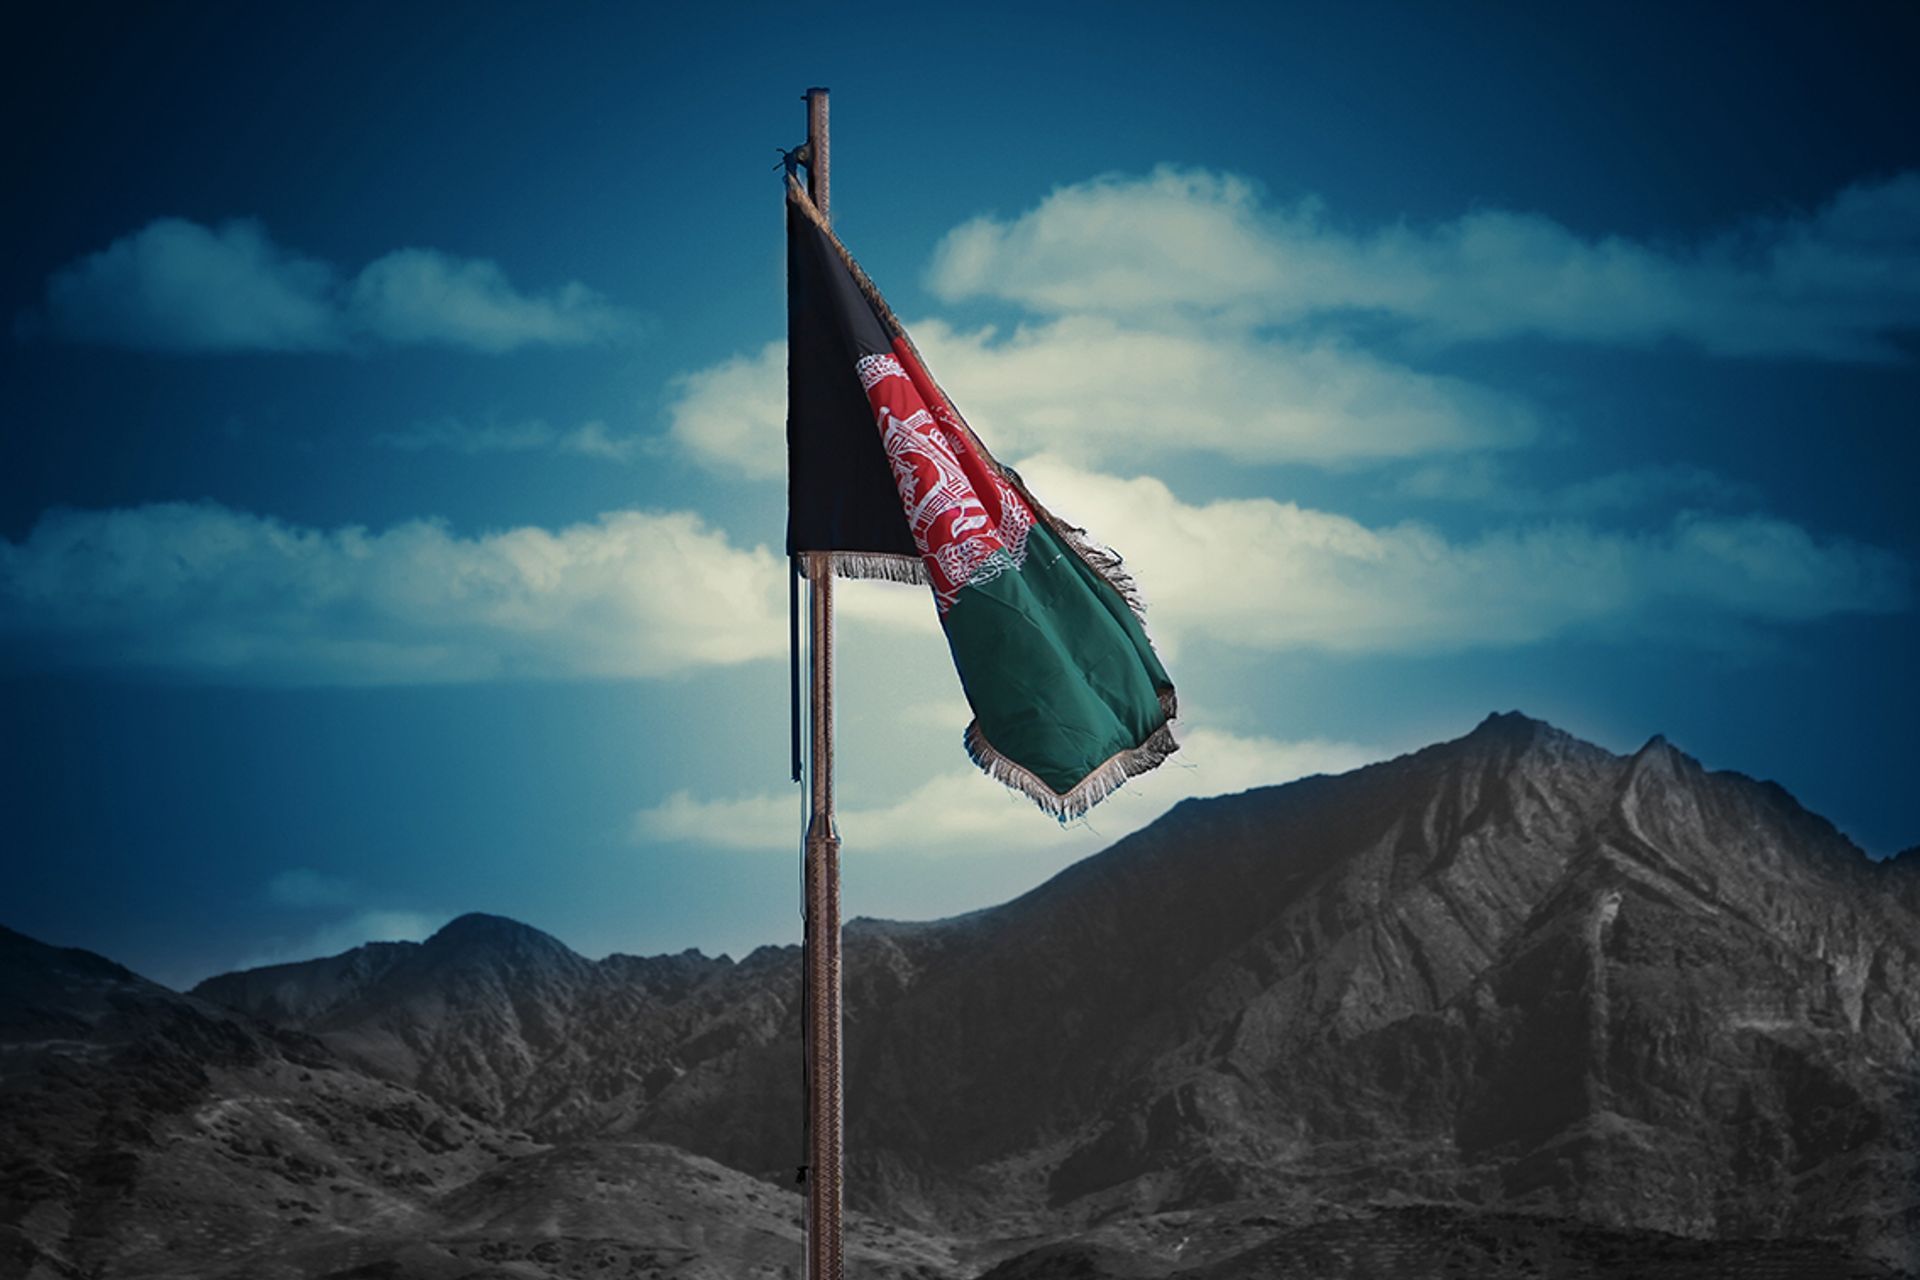 החוק החדש שנכנס ב-18 בפברואר בא בעקבות השתלטות הטליבאן על אפגניסטן בשנה שעברה

© Farid Ershad